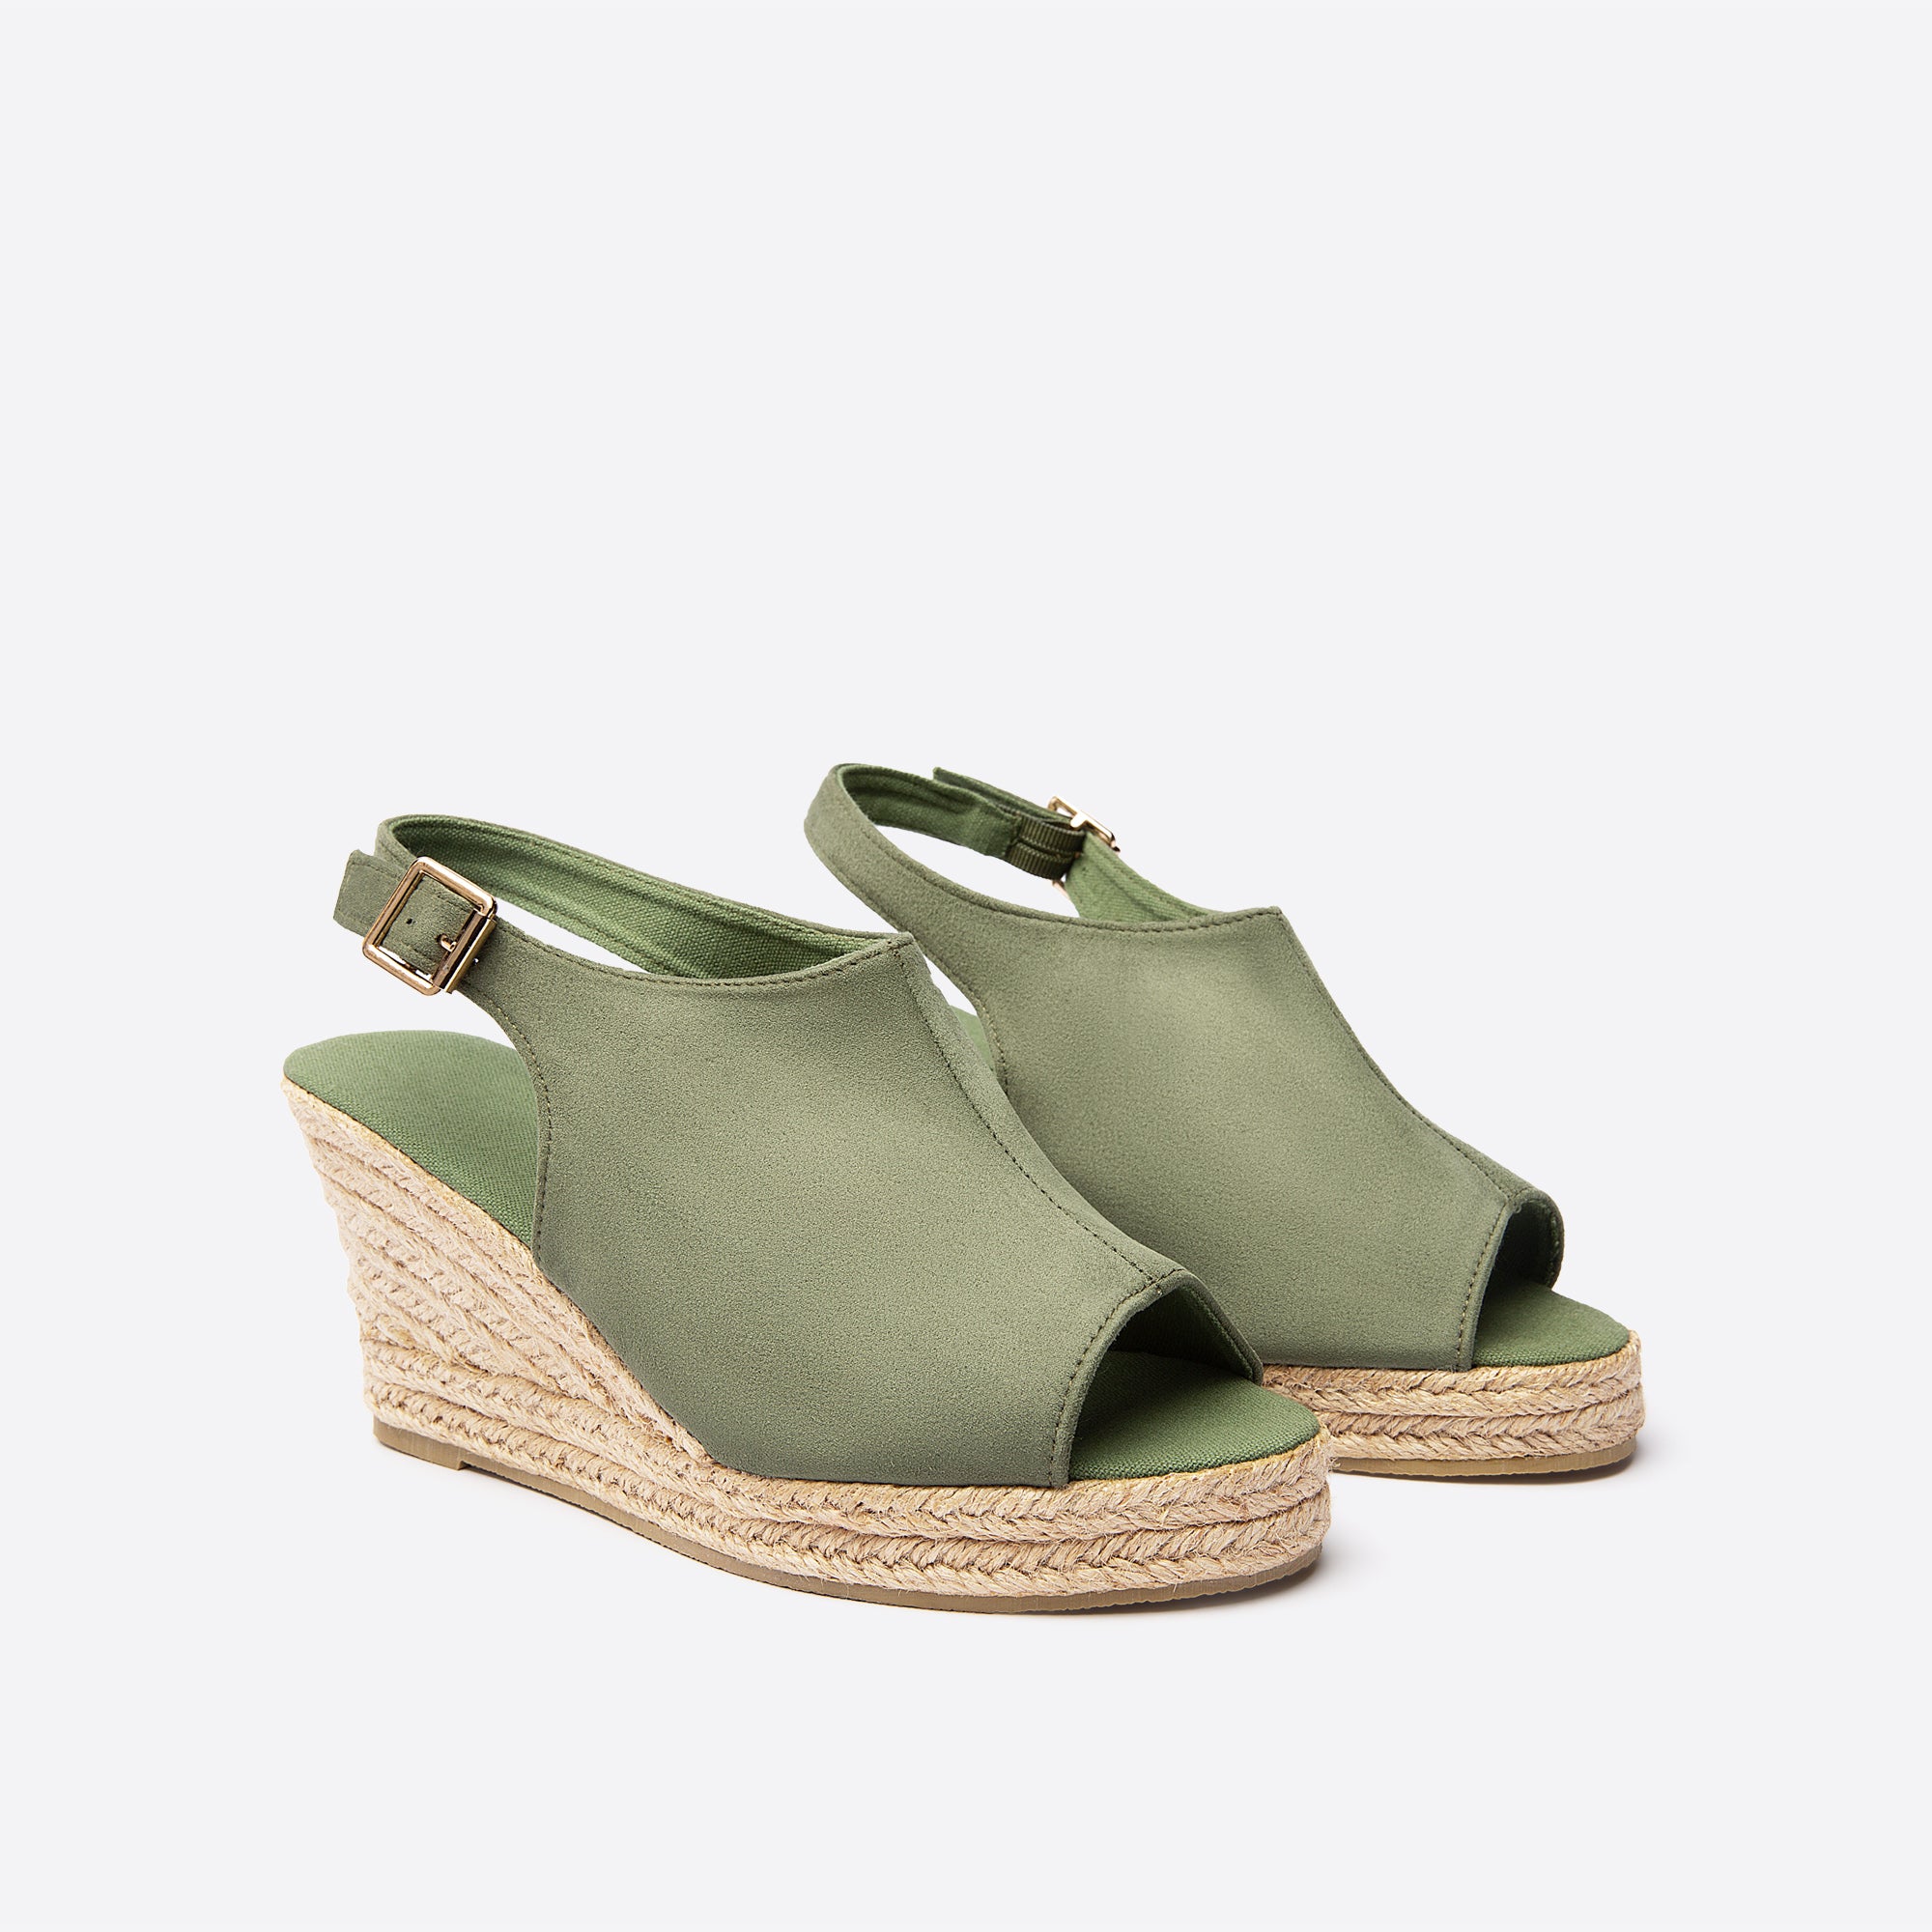 Solid Color Antiseptic Platform & Wedge Espadrilles Sandals